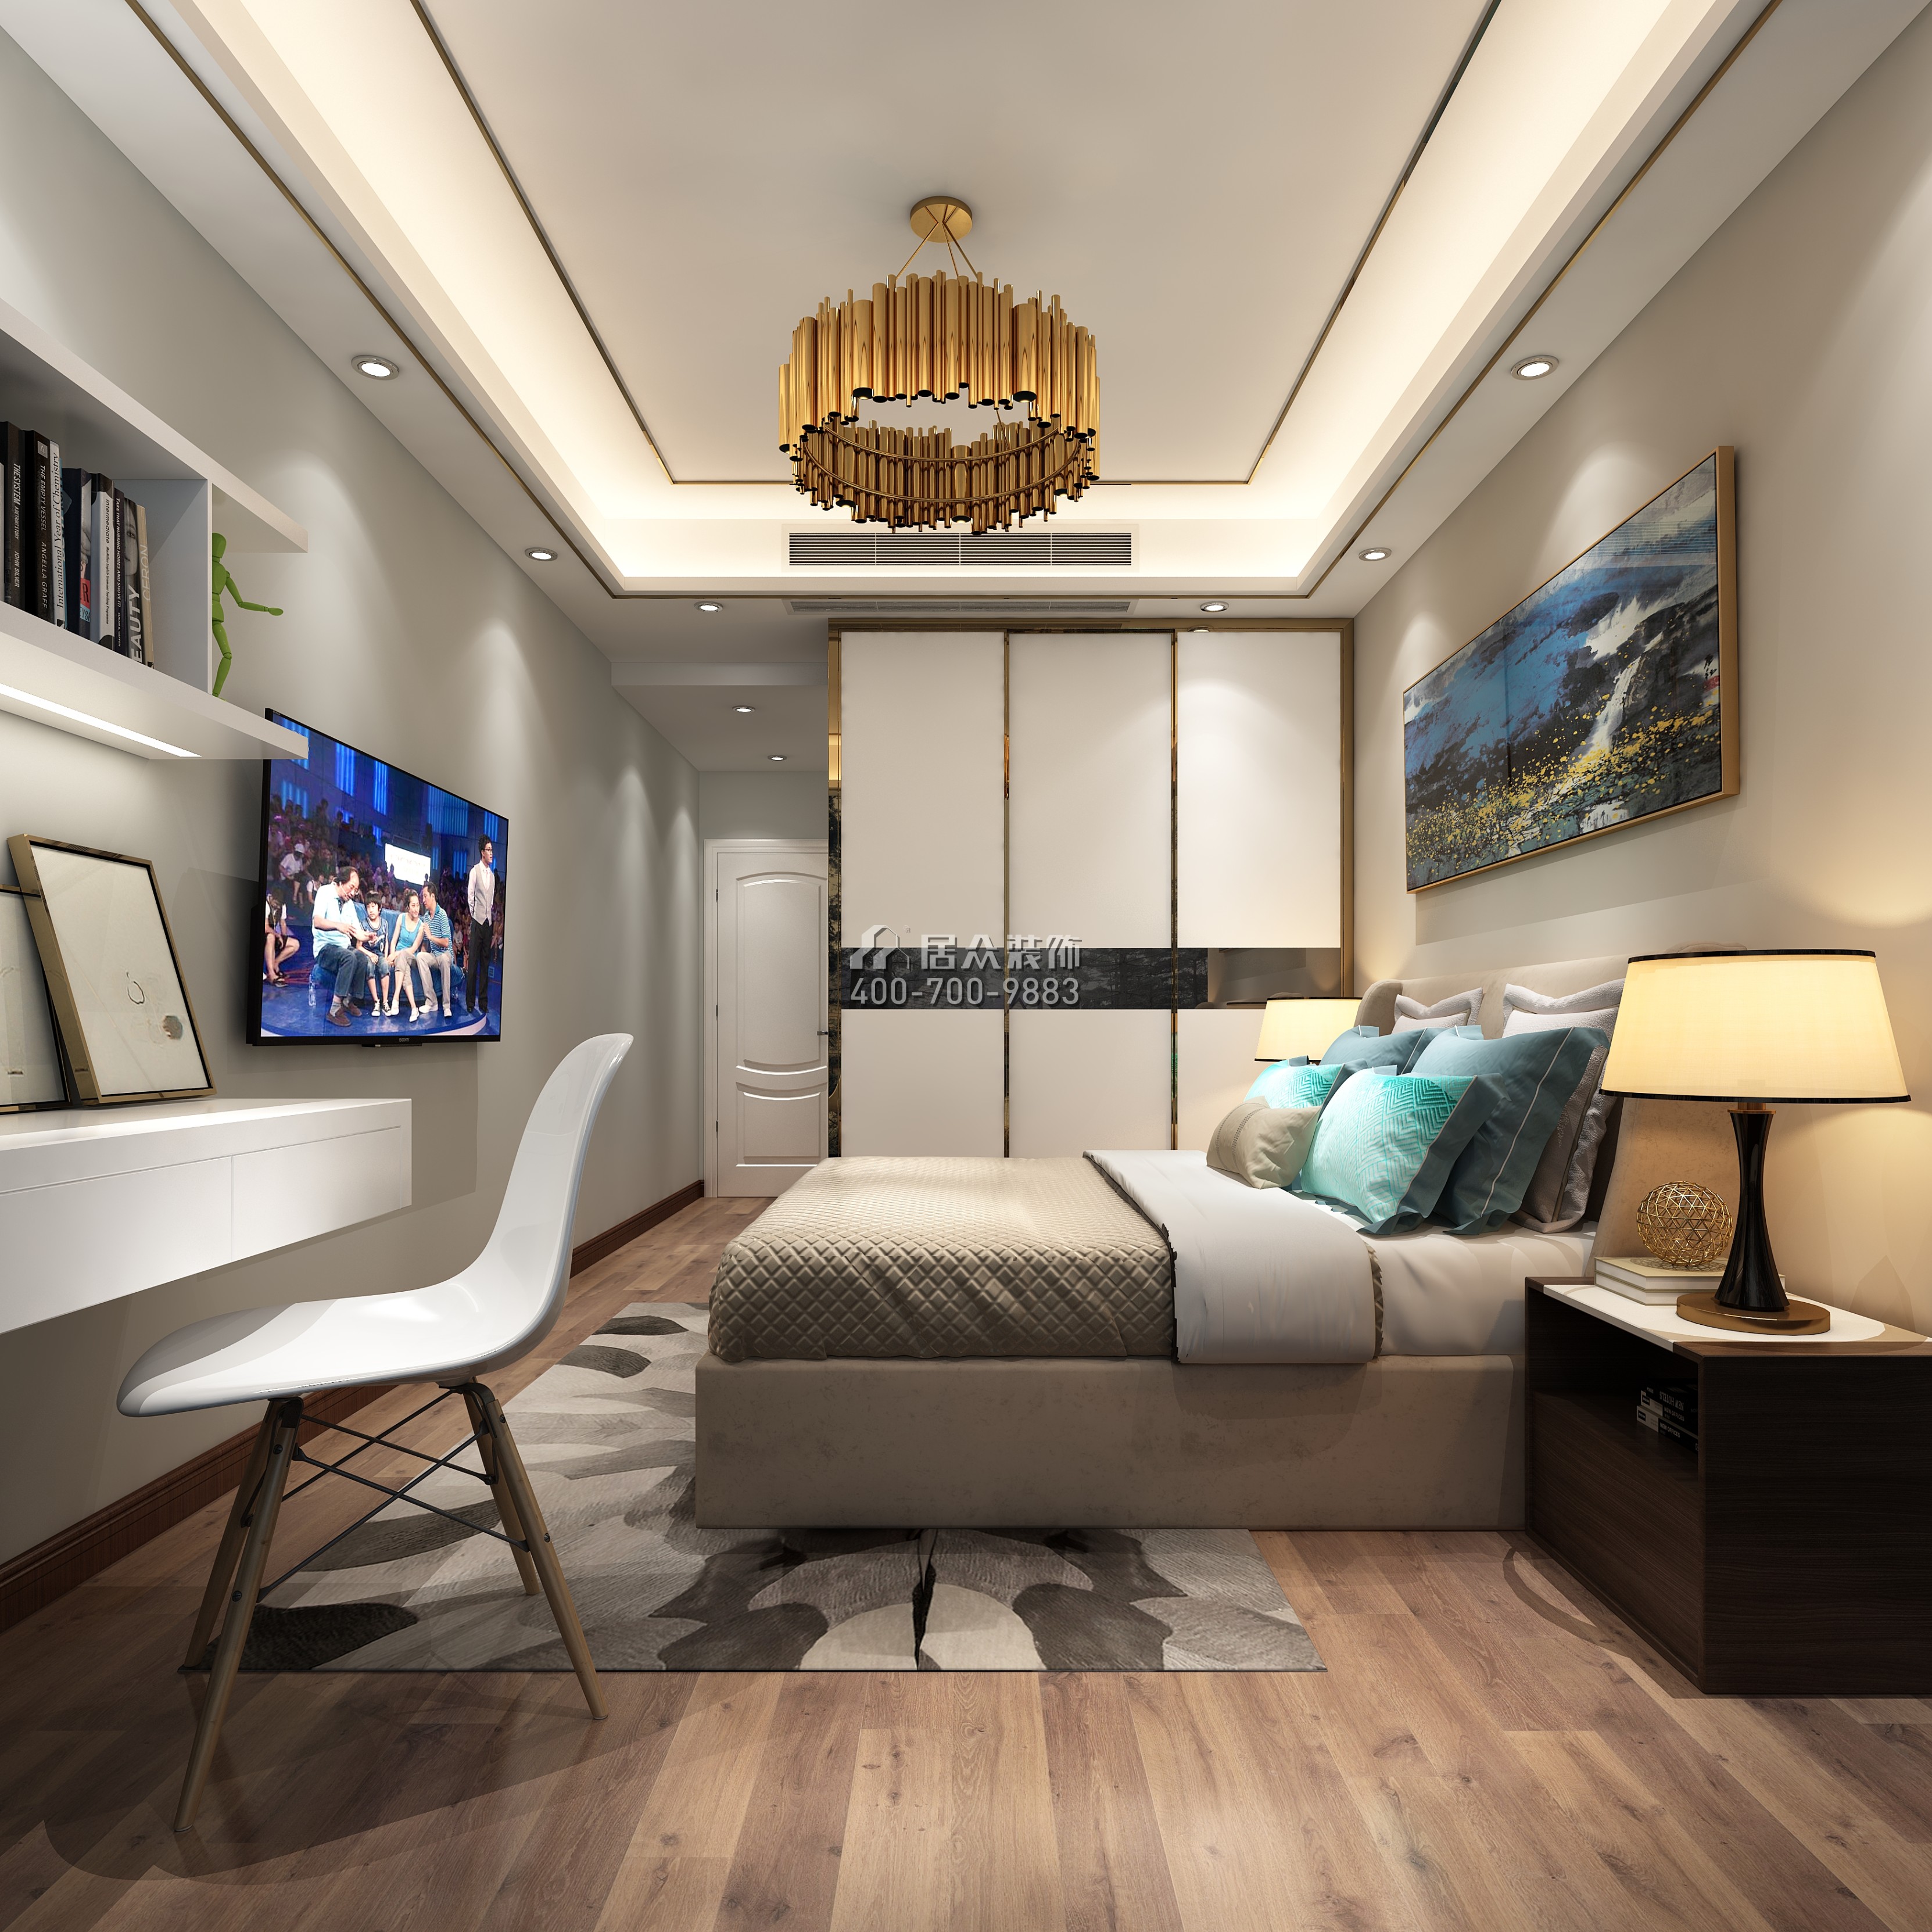 中洲中央公园120平方米现代简约风格平层户型卧室装修效果图